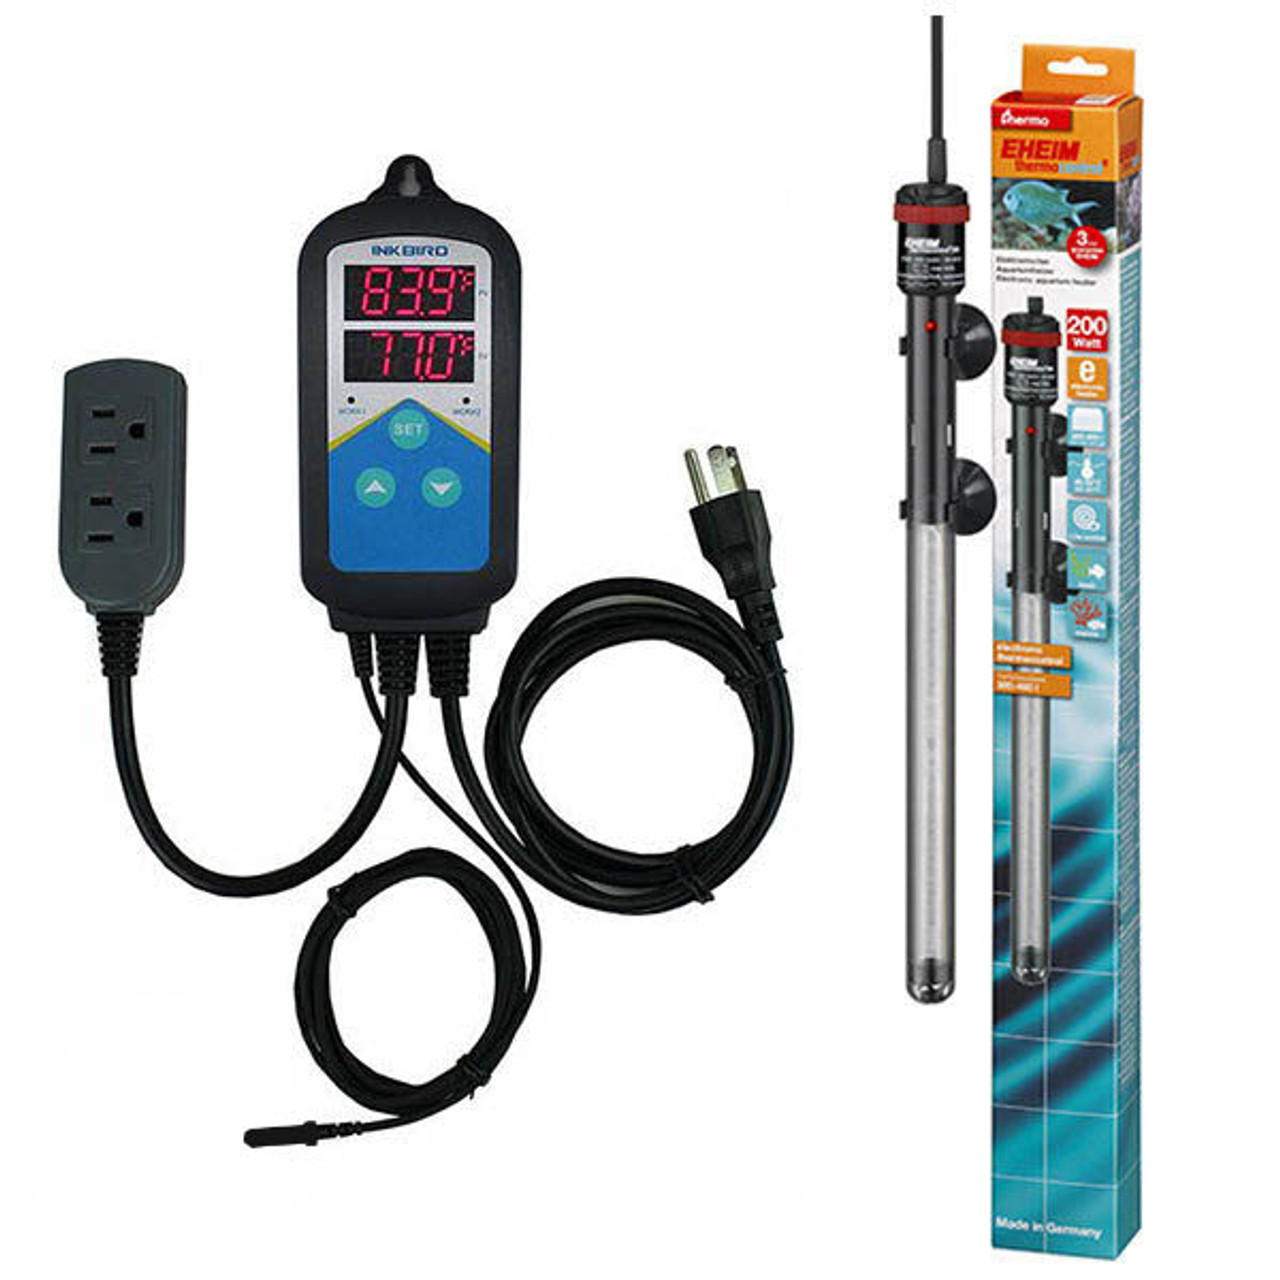 Thermocontrol-E (200 Watt) Aquarium Heater Kit - EHEIM Inkbird